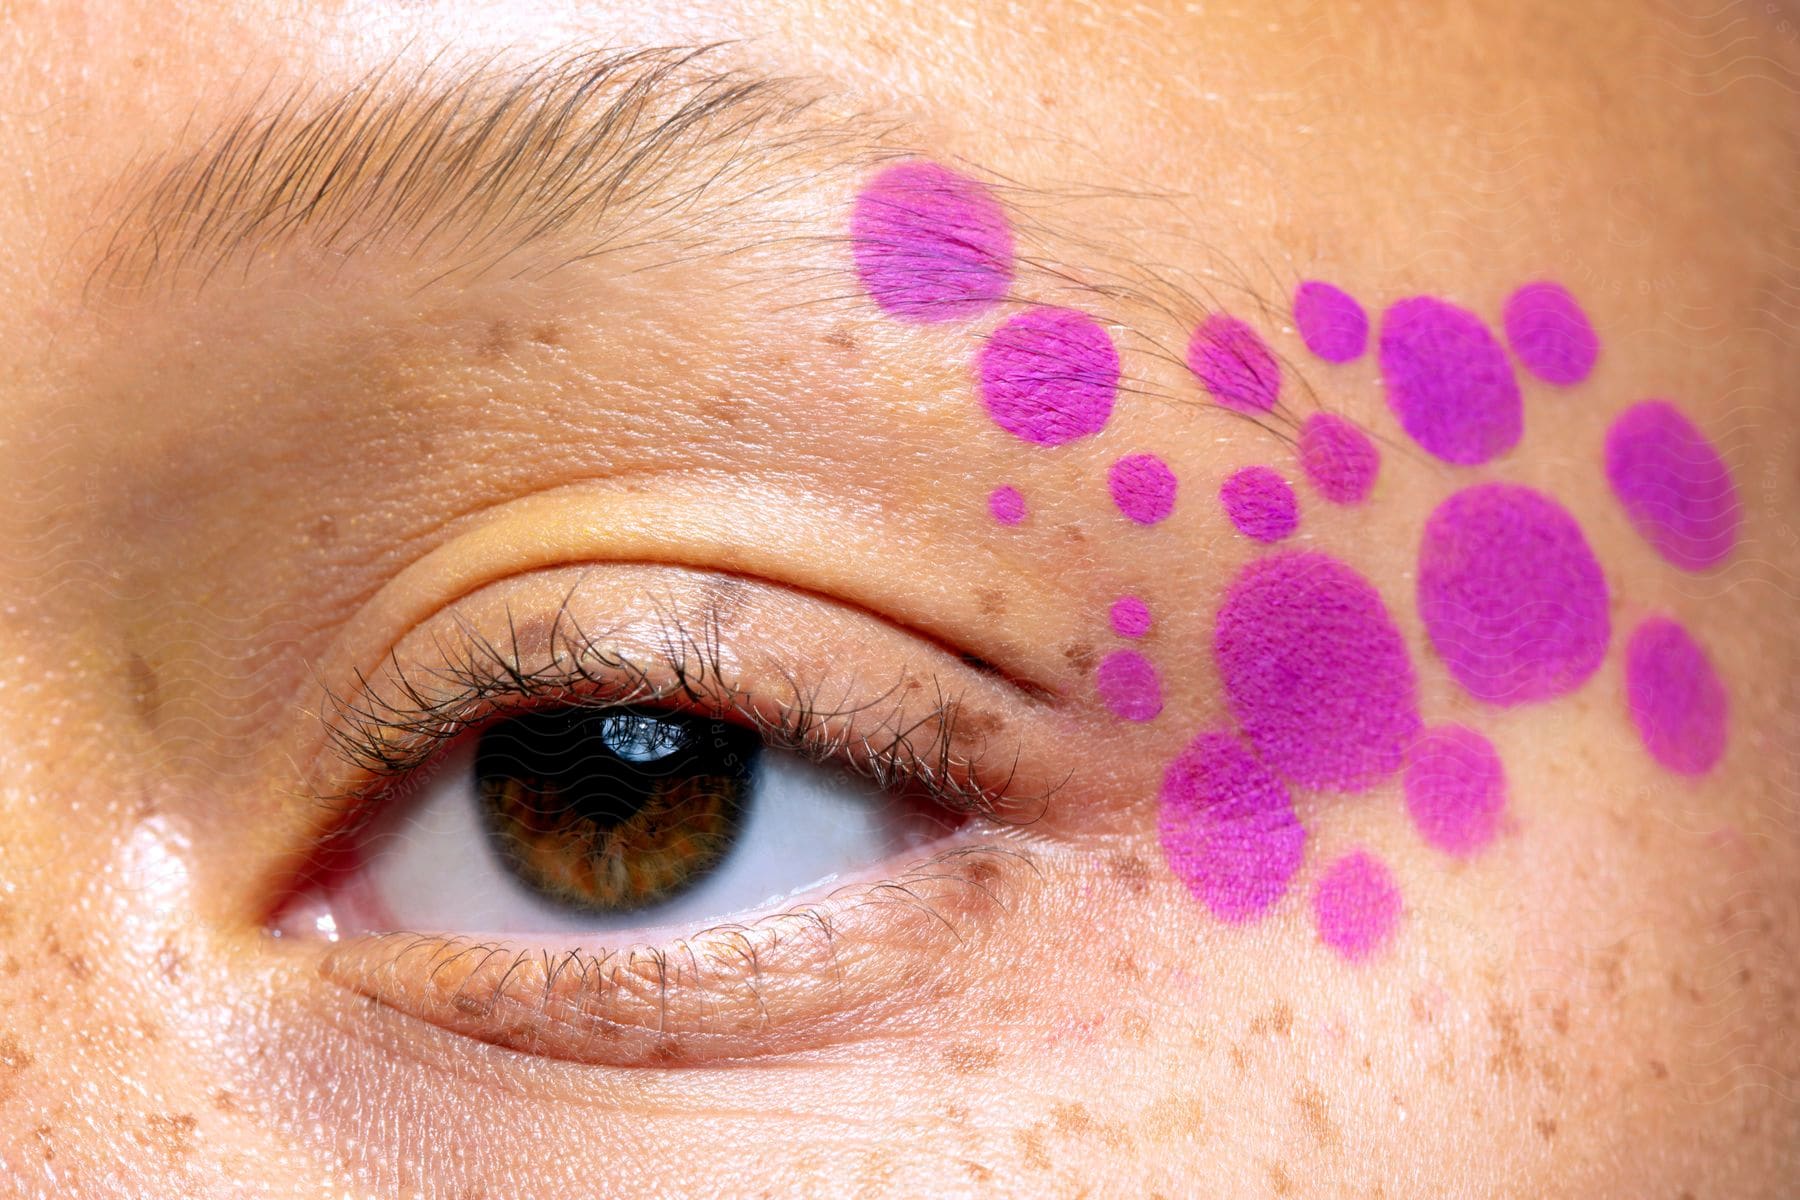 Purple dot makeup next to a woman's eye